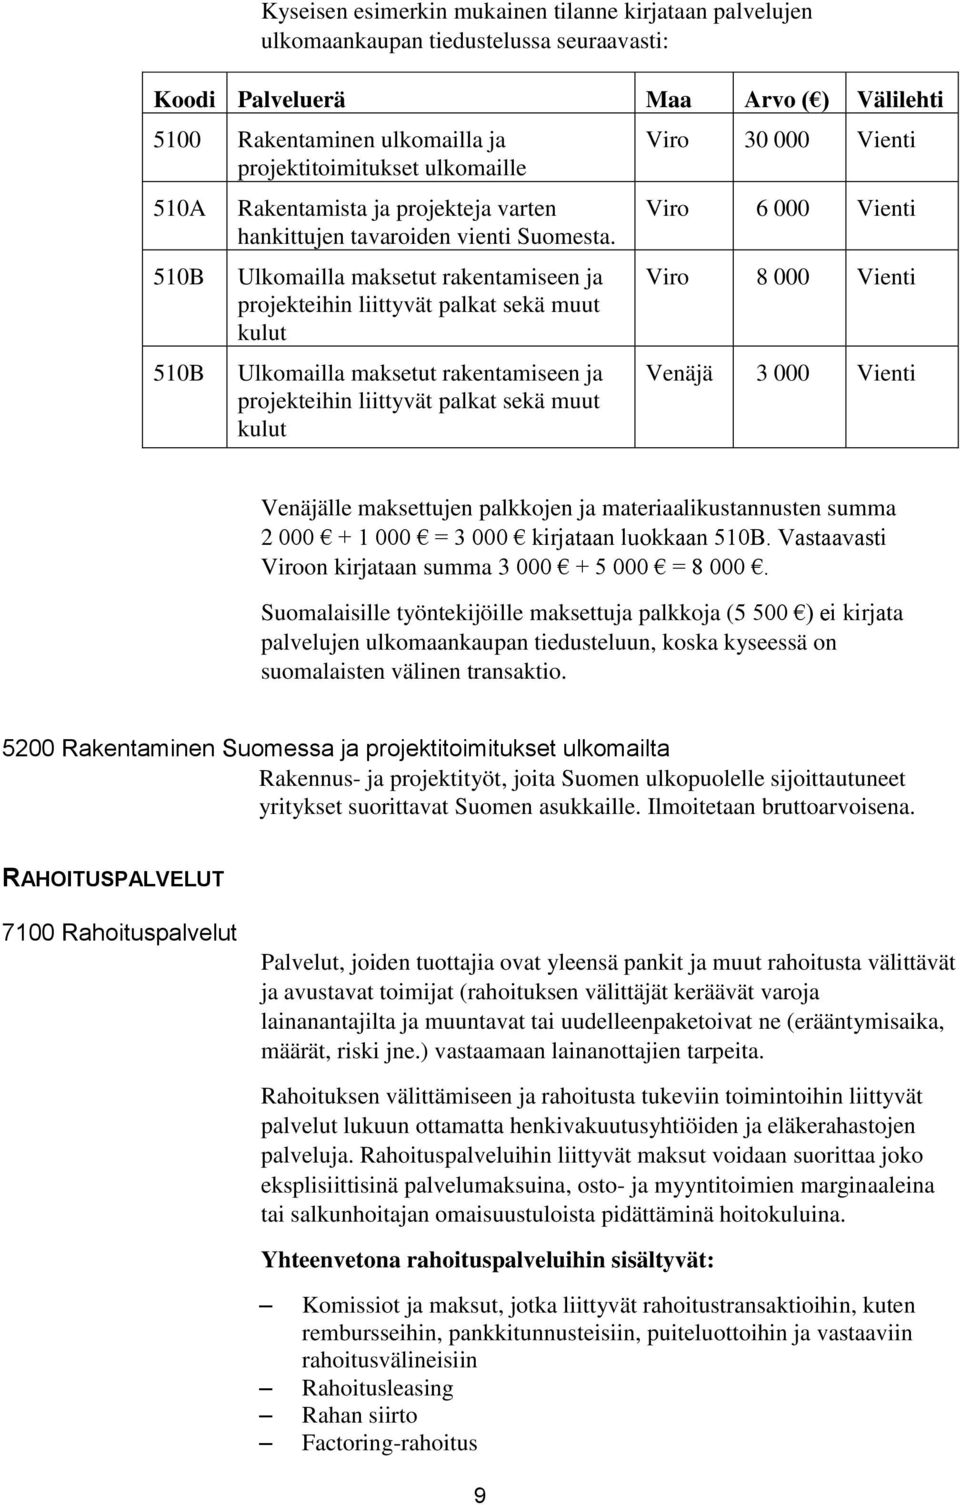 Ulkomailla maksetut rakentamiseen ja projekteihin liittyvät palkat sekä muut kulut Ulkomailla maksetut rakentamiseen ja projekteihin liittyvät palkat sekä muut kulut Viro 30 000 Vienti Viro 6 000